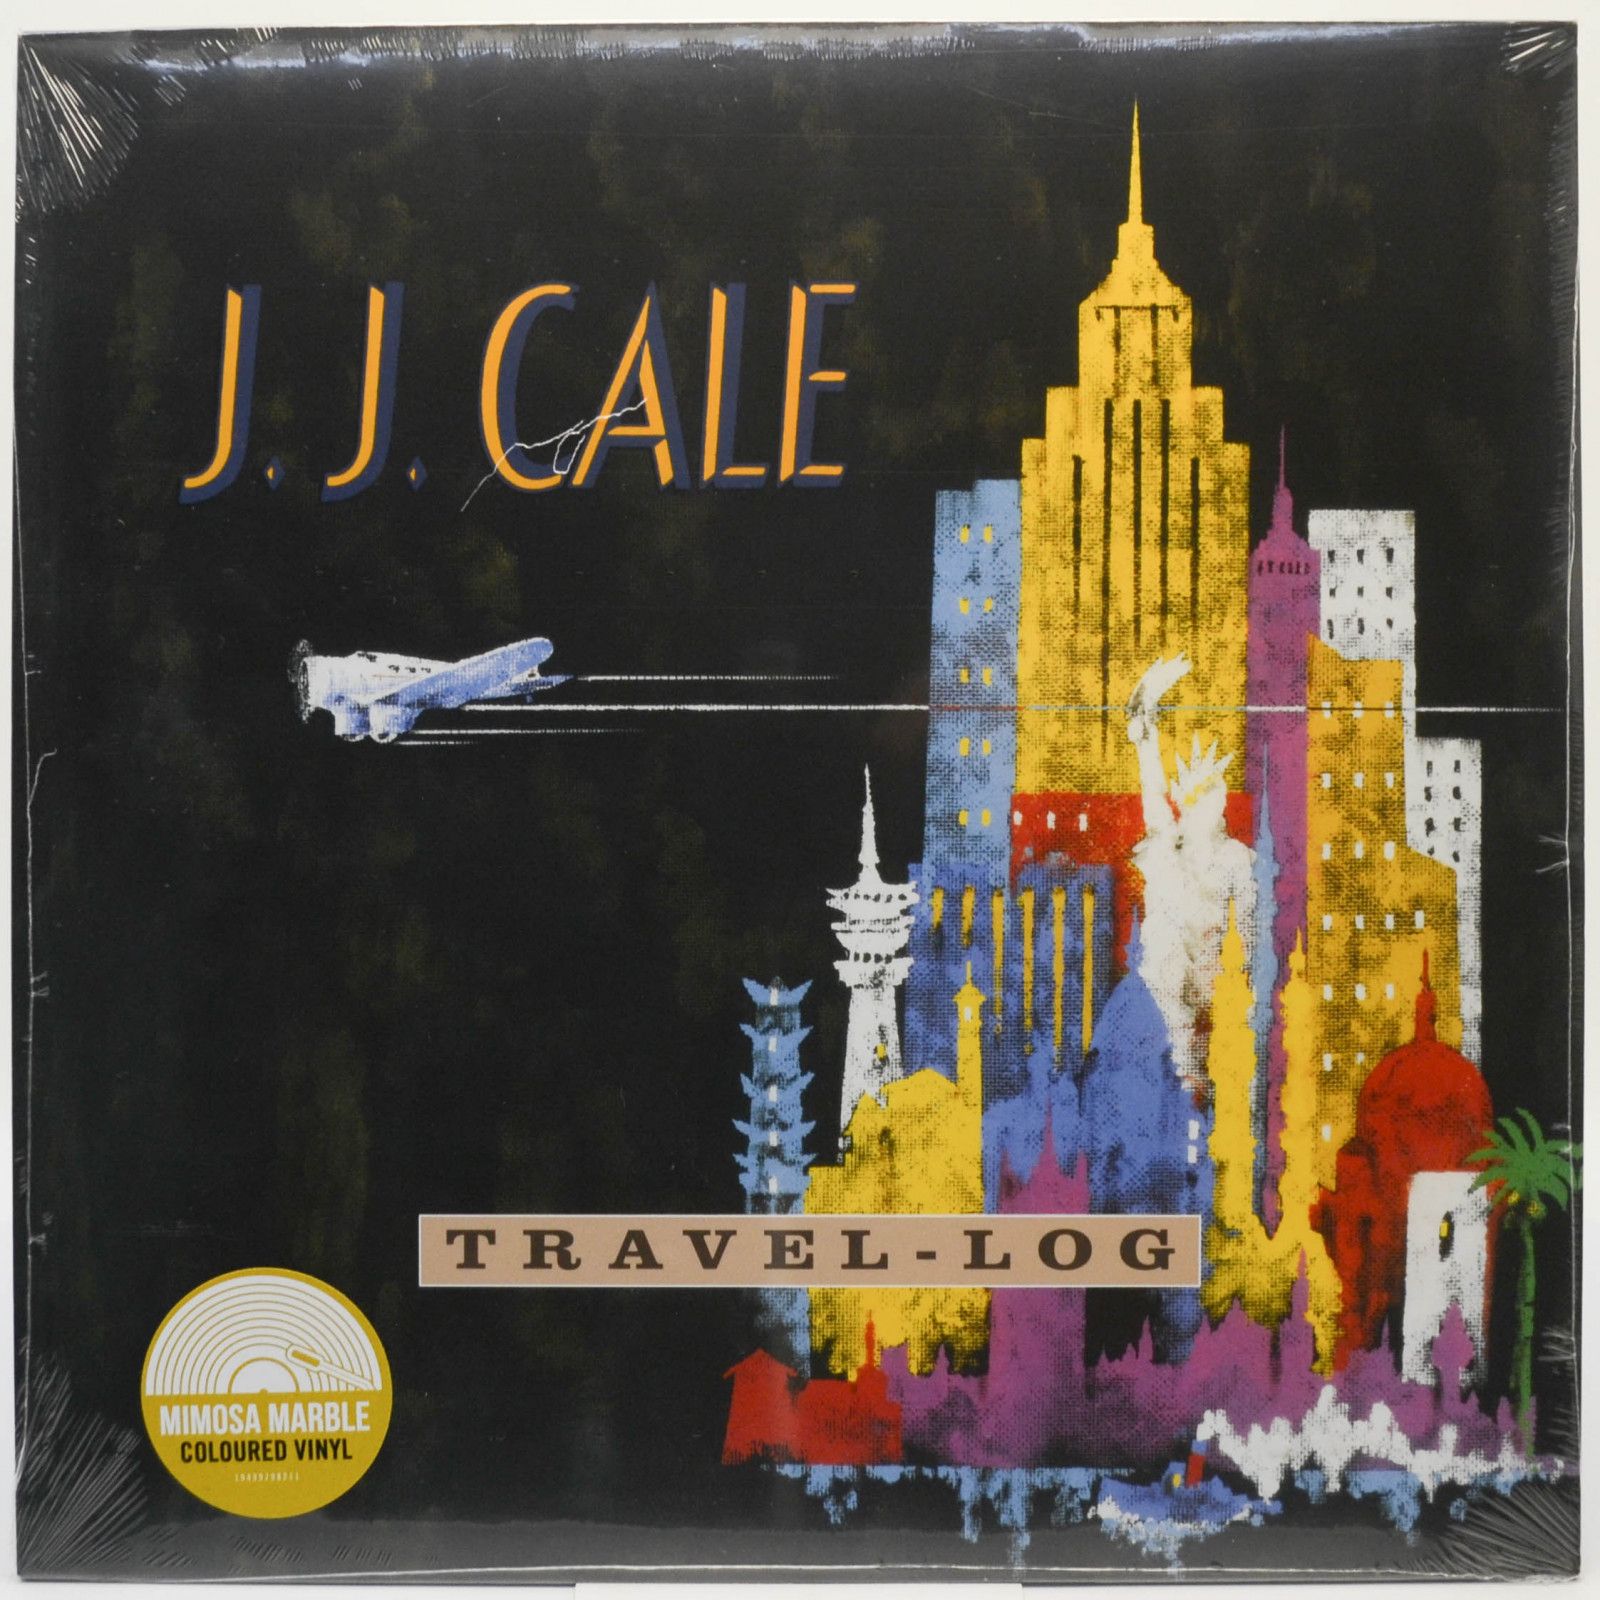 J.J. Cale — Travel-Log, 1989